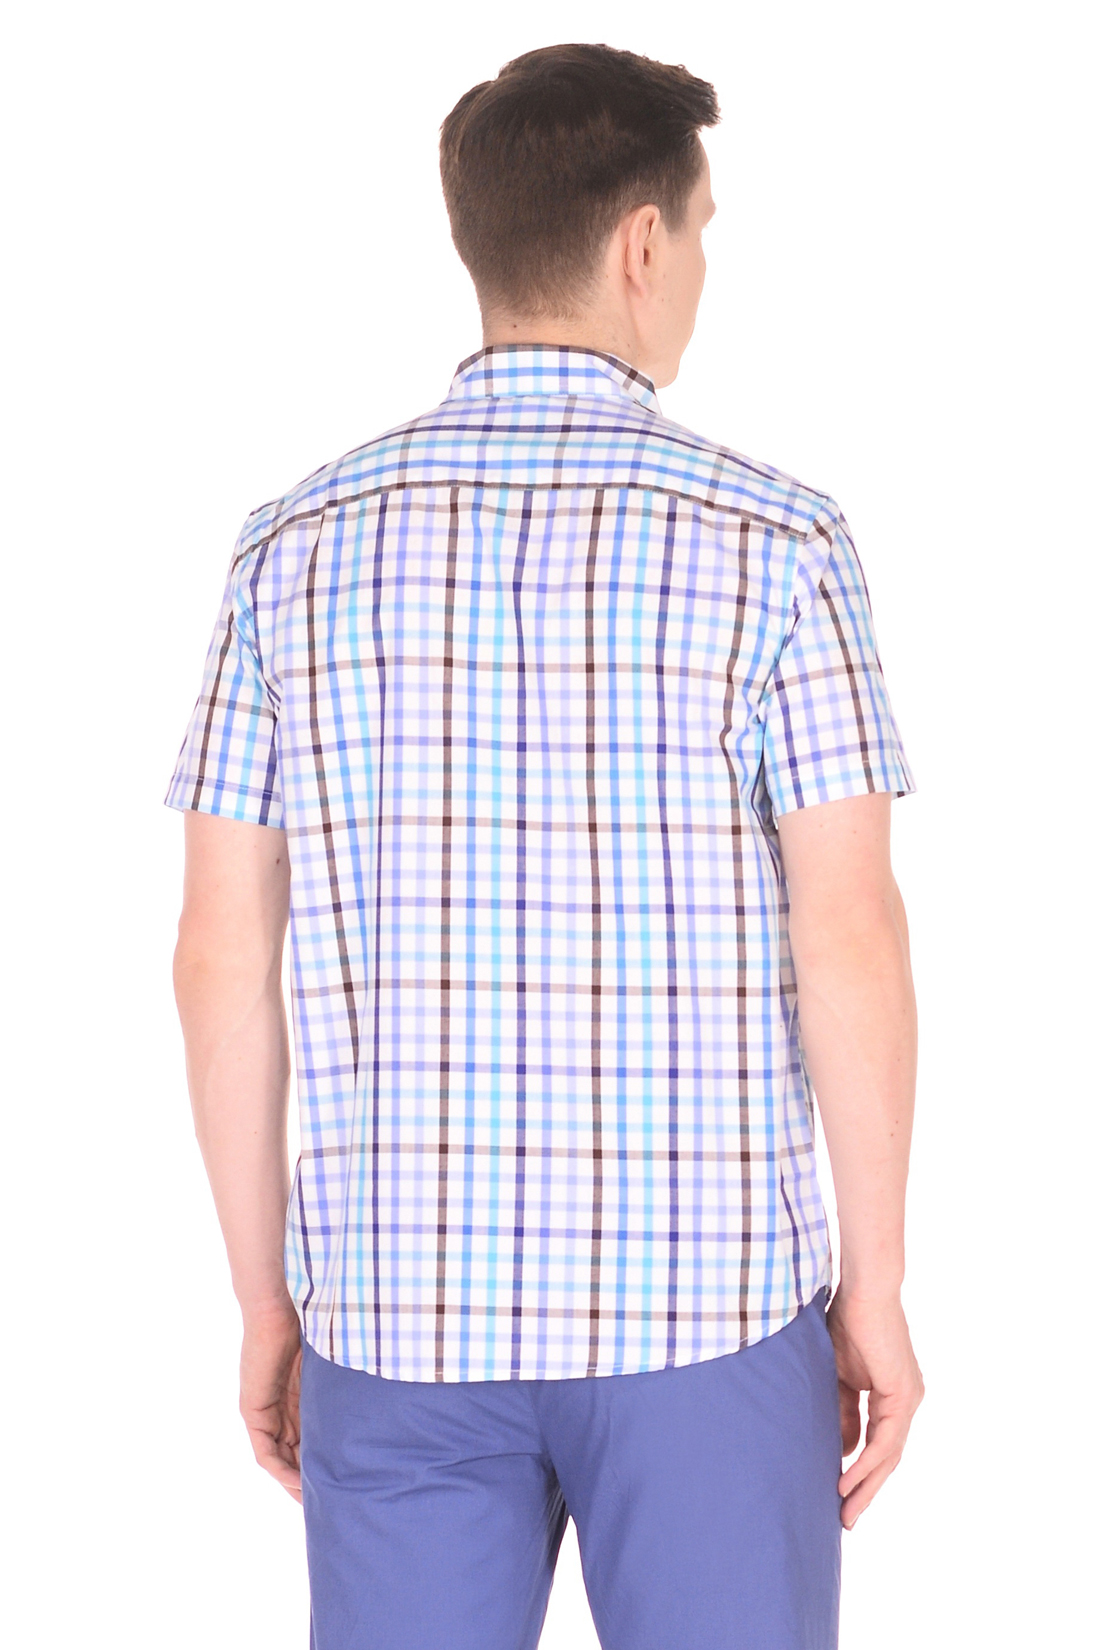 Рубашка с коротким рукавом в яркую клетку (арт. baon B688008), размер S, цвет синий Рубашка с коротким рукавом в яркую клетку (арт. baon B688008) - фото 2